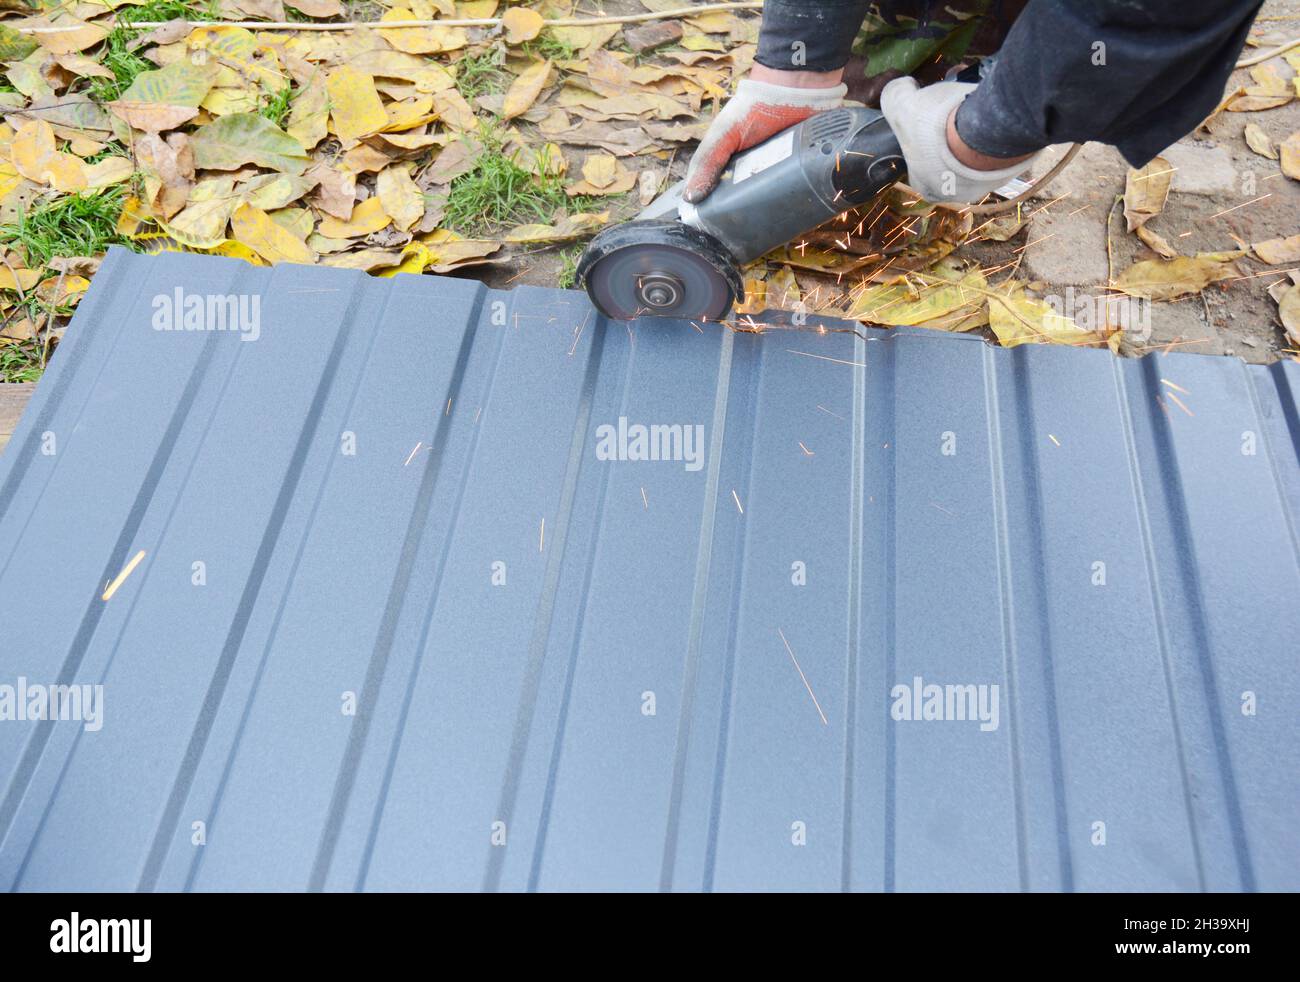 Couvreur coupant des tôles de toit, carreaux métalliques pour la construction de toitures de maison.Couper le toit en carreaux de métal. Banque D'Images